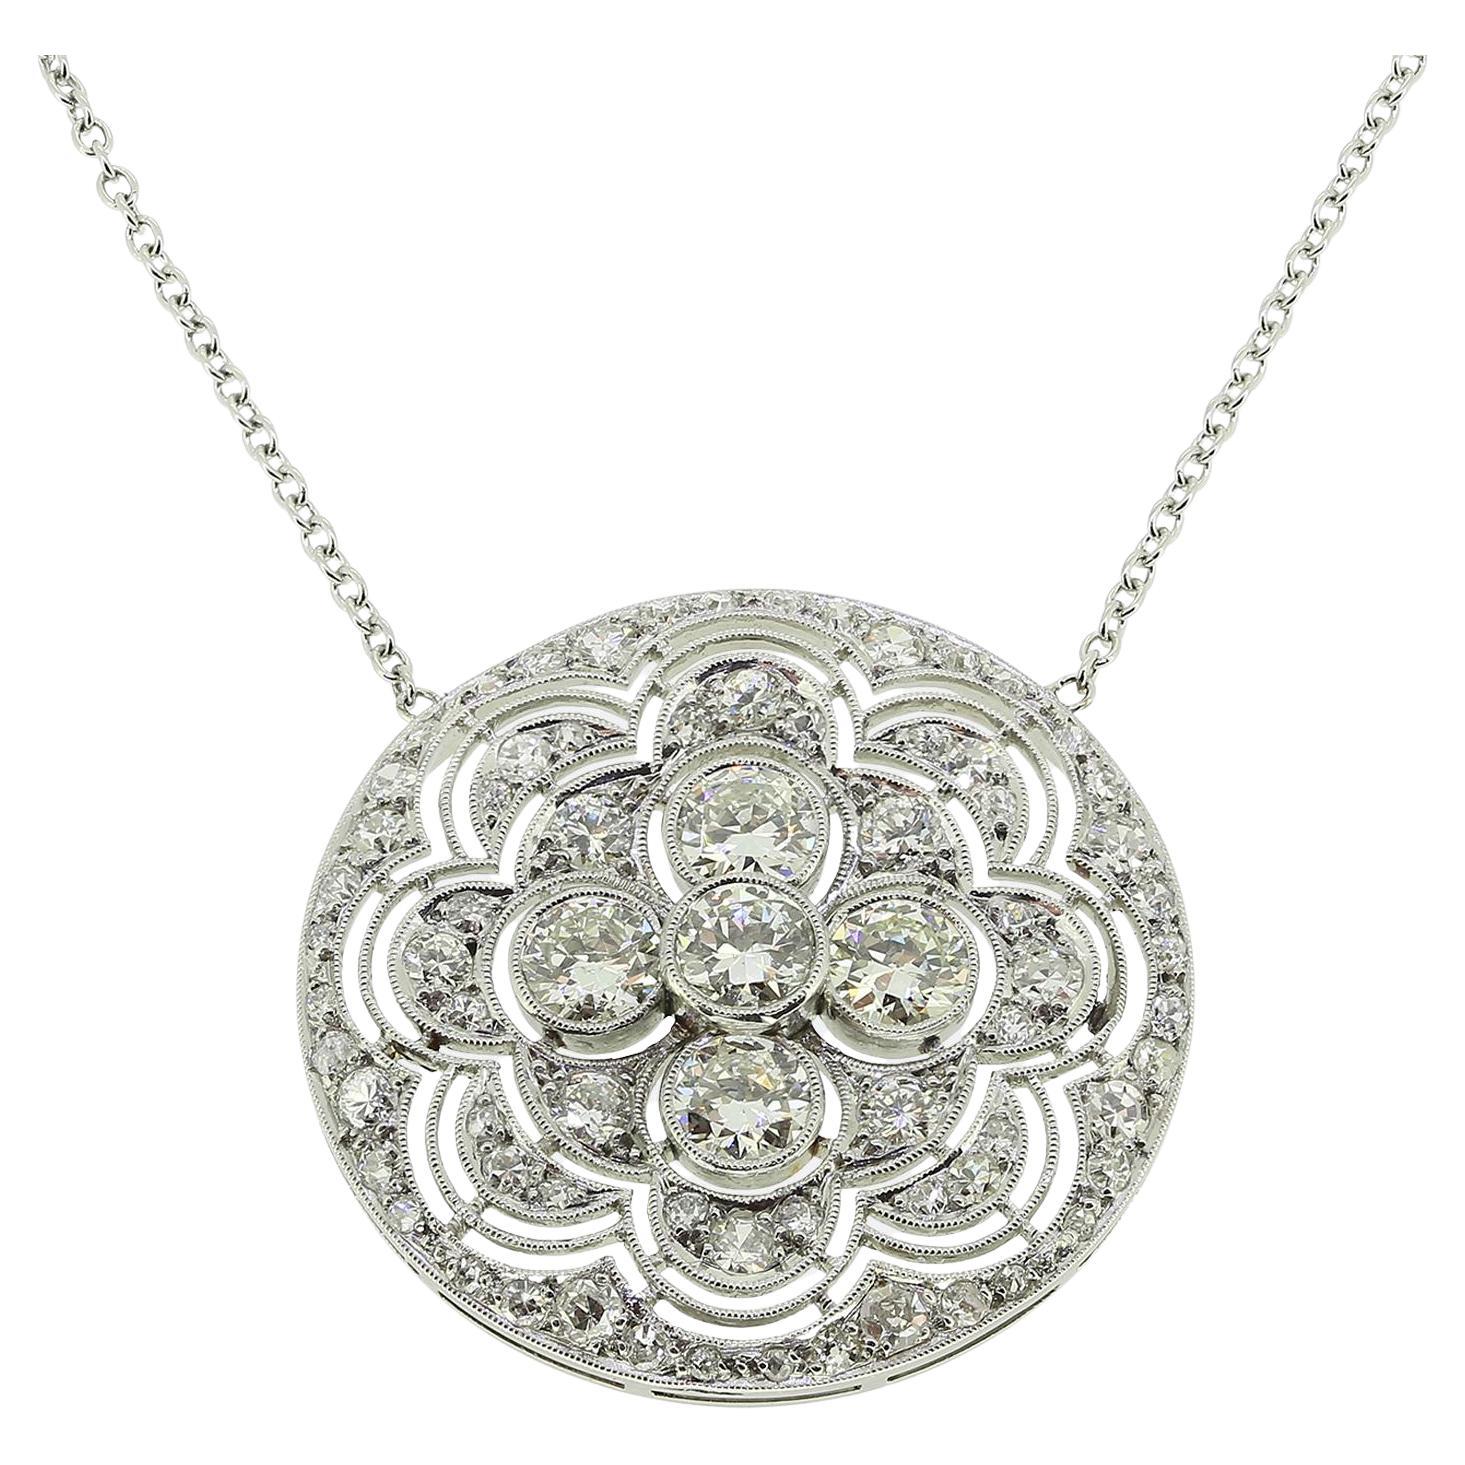 Art Deco Diamond Pendant Necklace